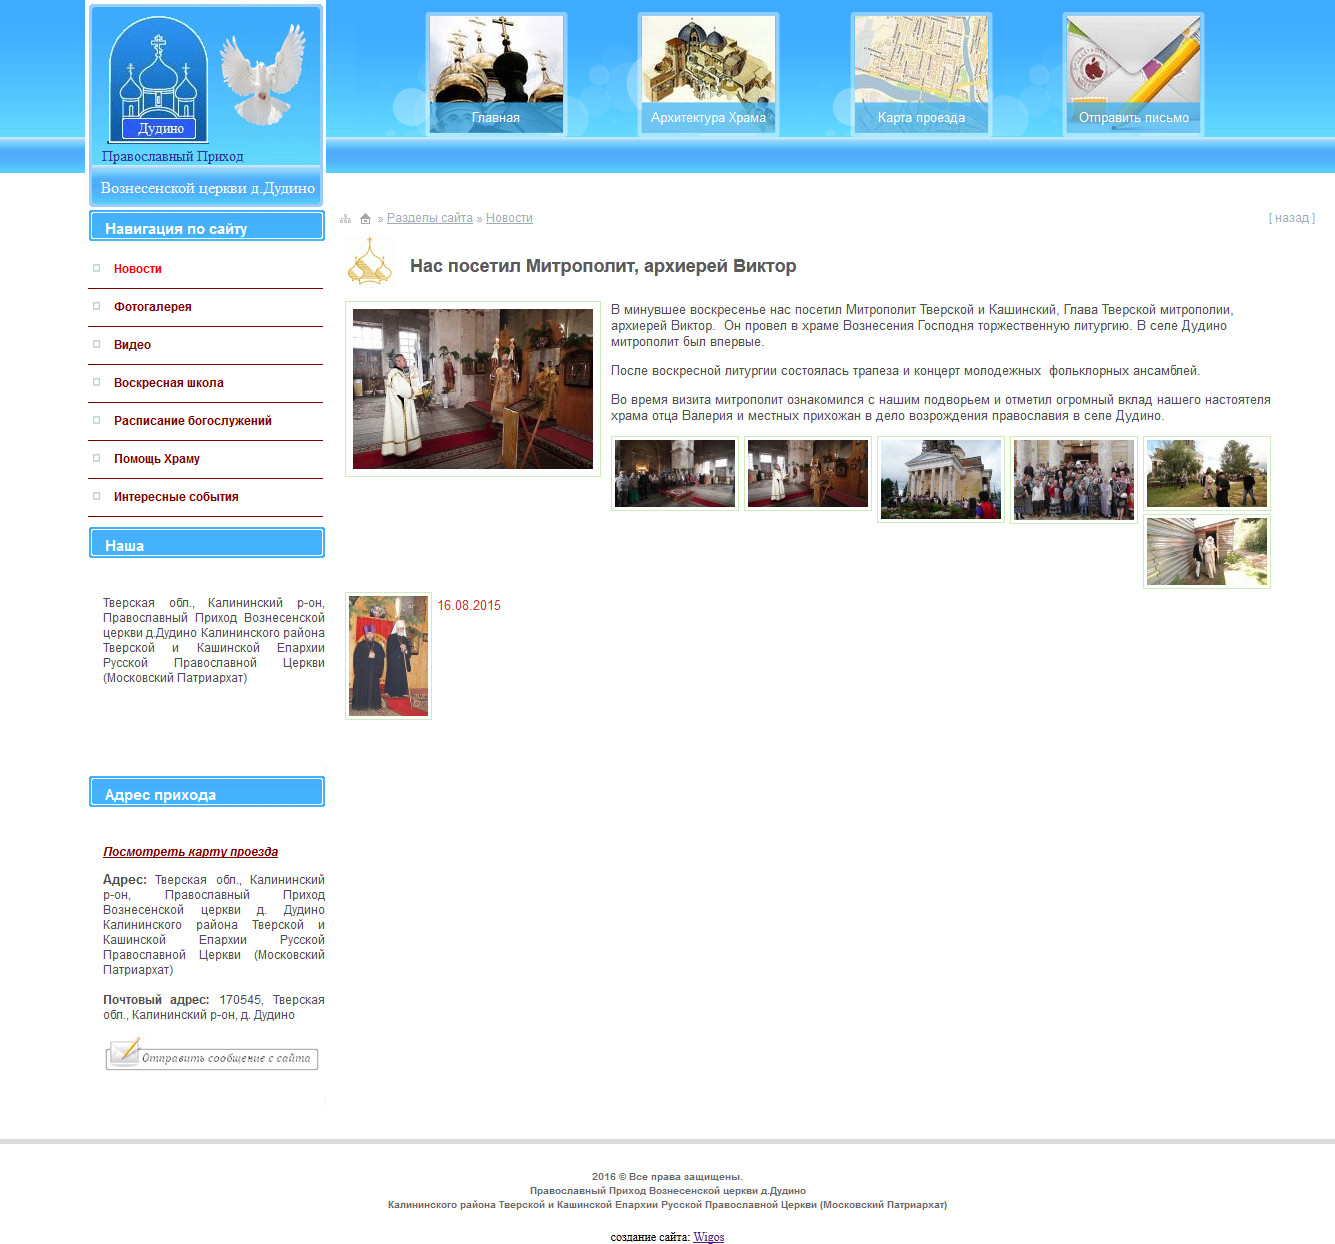 Правзнак Сайт Православных Знакомств